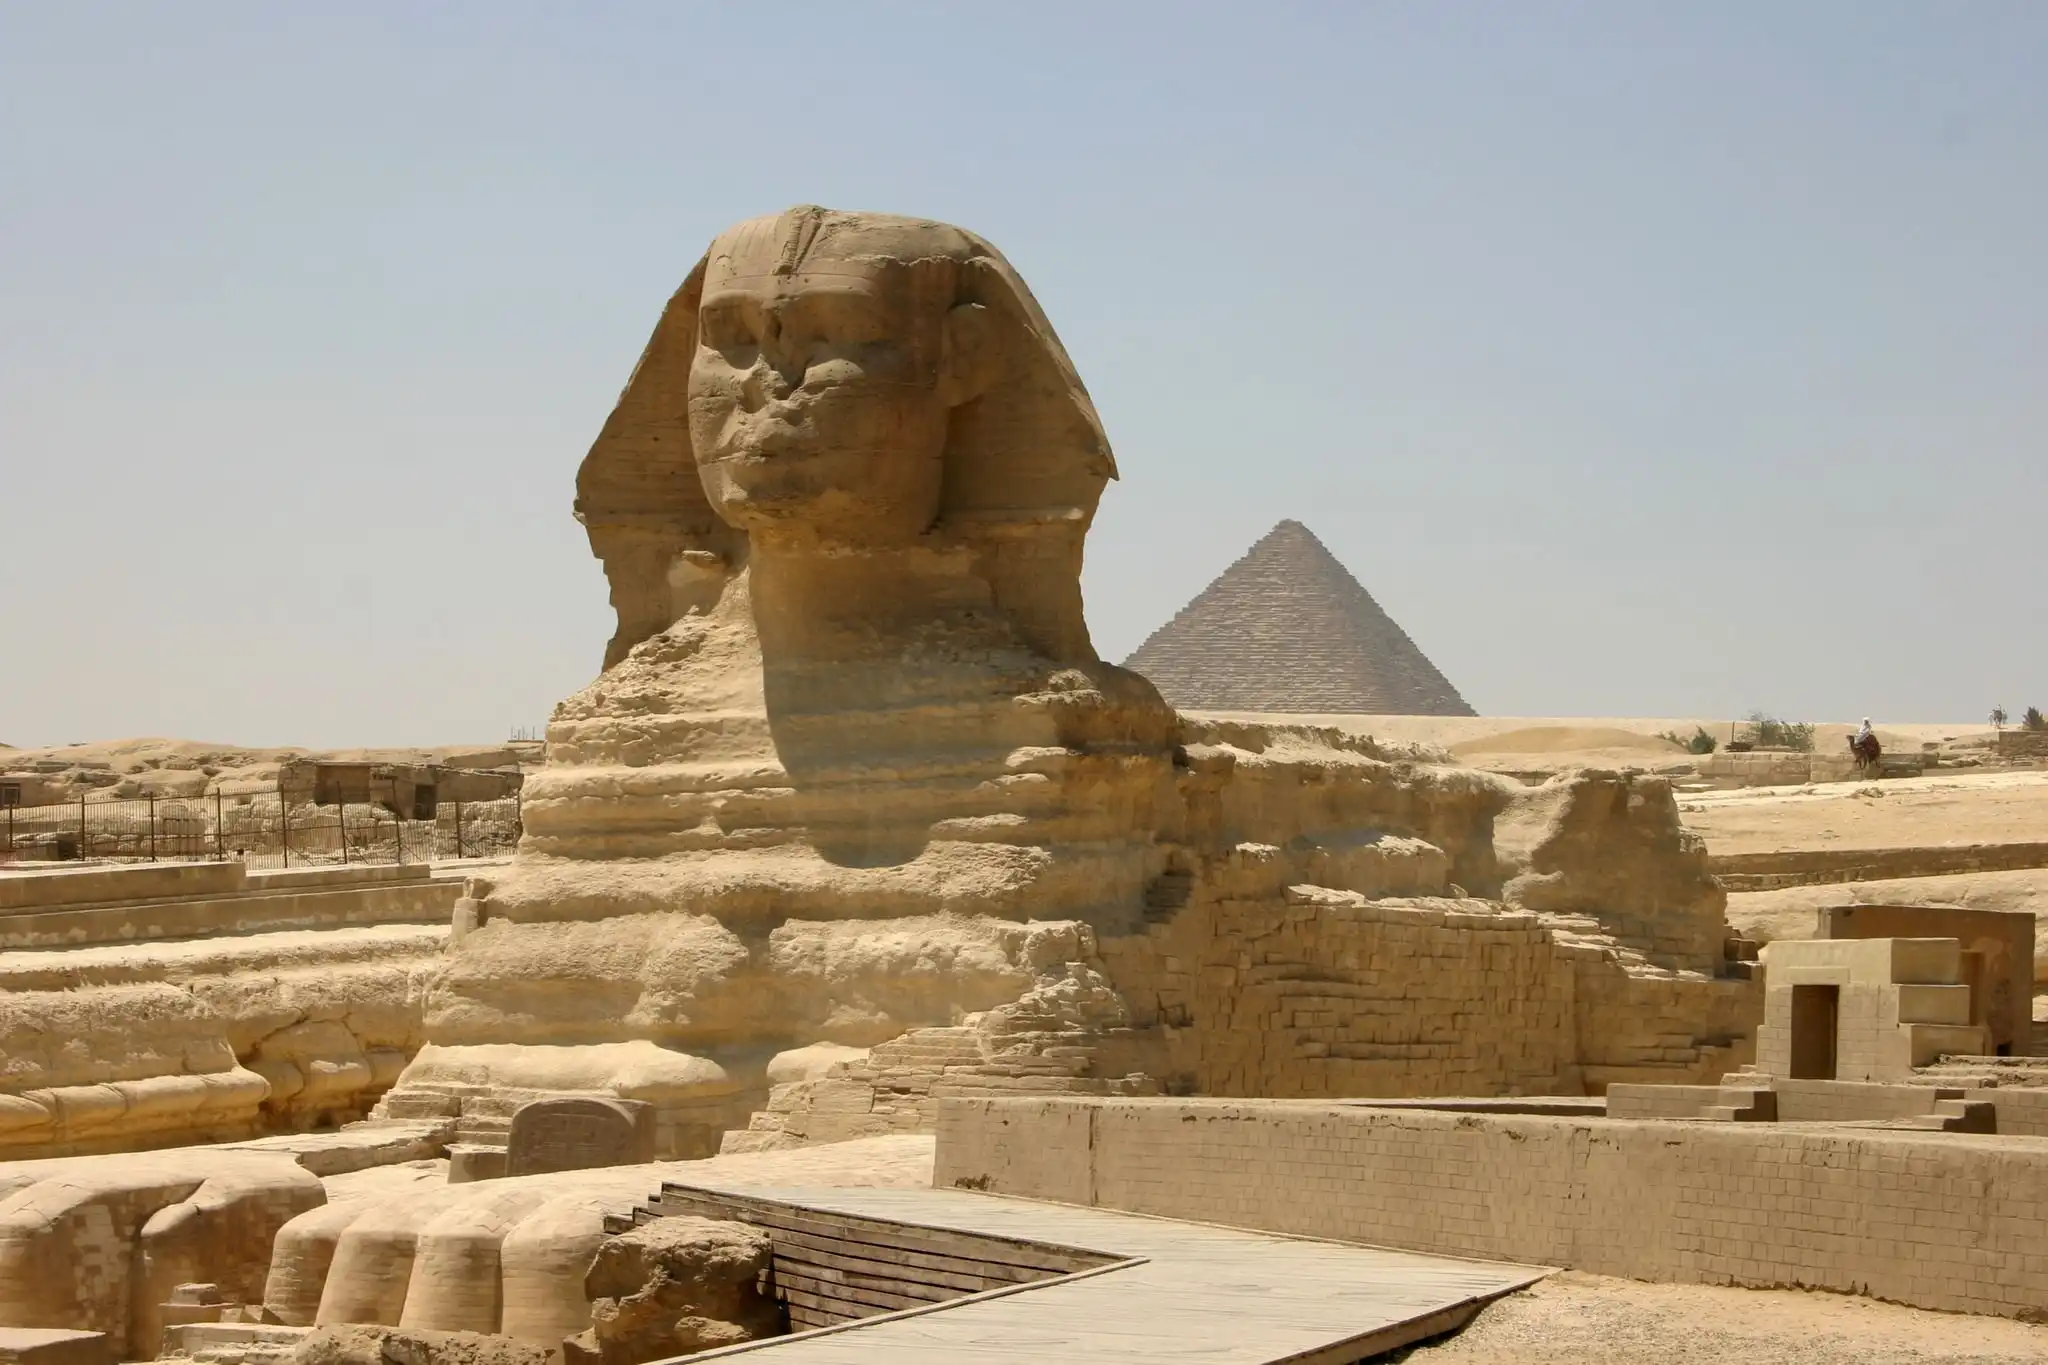 Giza Pyramids and The Sphinx